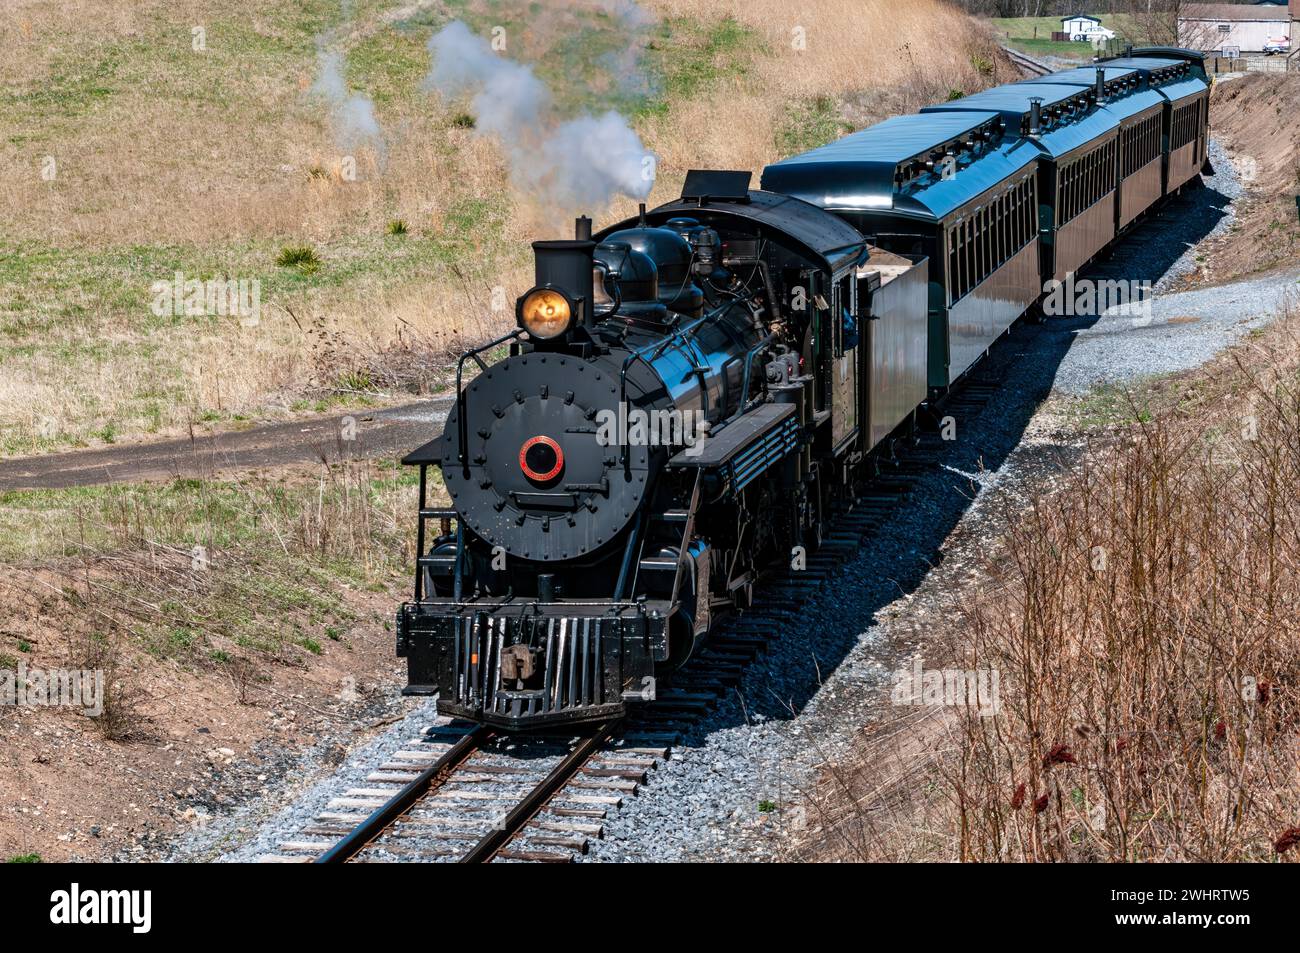 Vue de face et de dessus d'un train à vapeur passager à voie étroite restauré qui souffle de la fumée Banque D'Images